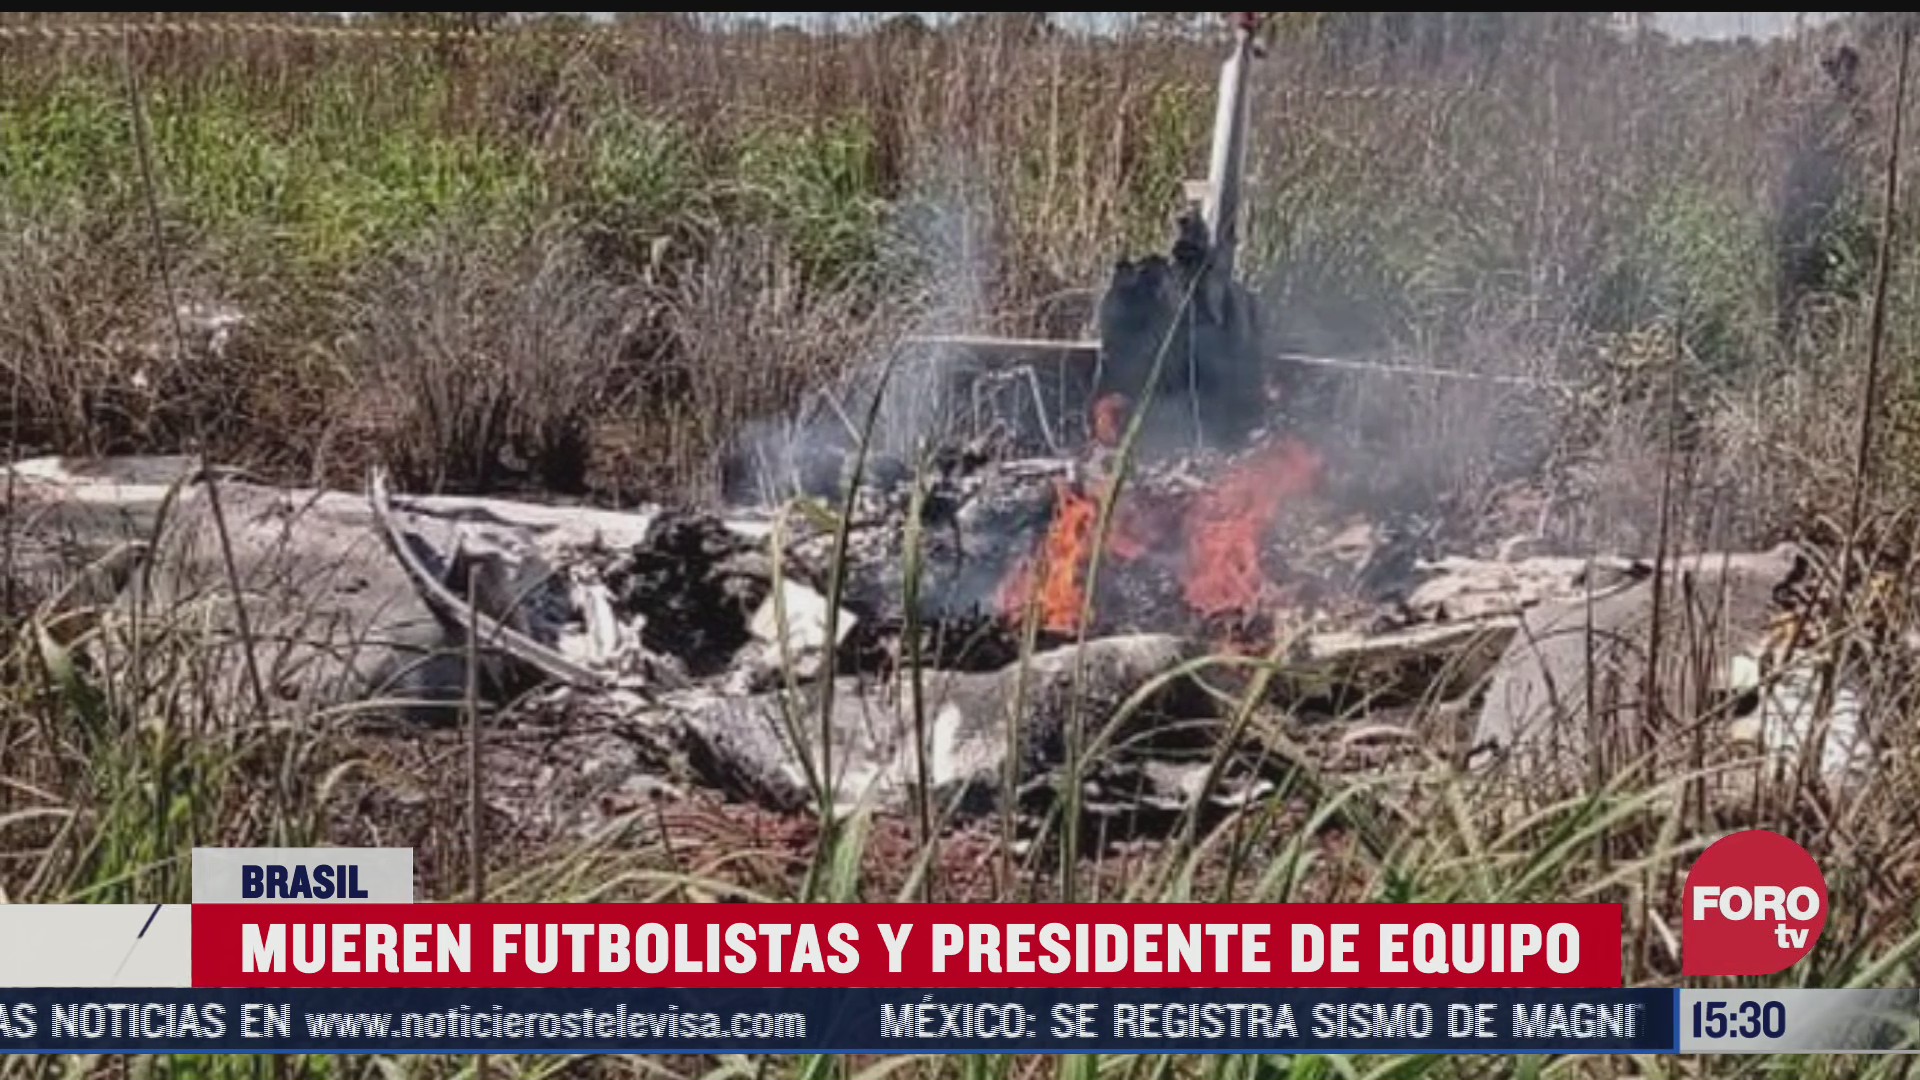 mueren futbolistas y presidente de equipo en brasil al caer avioneta